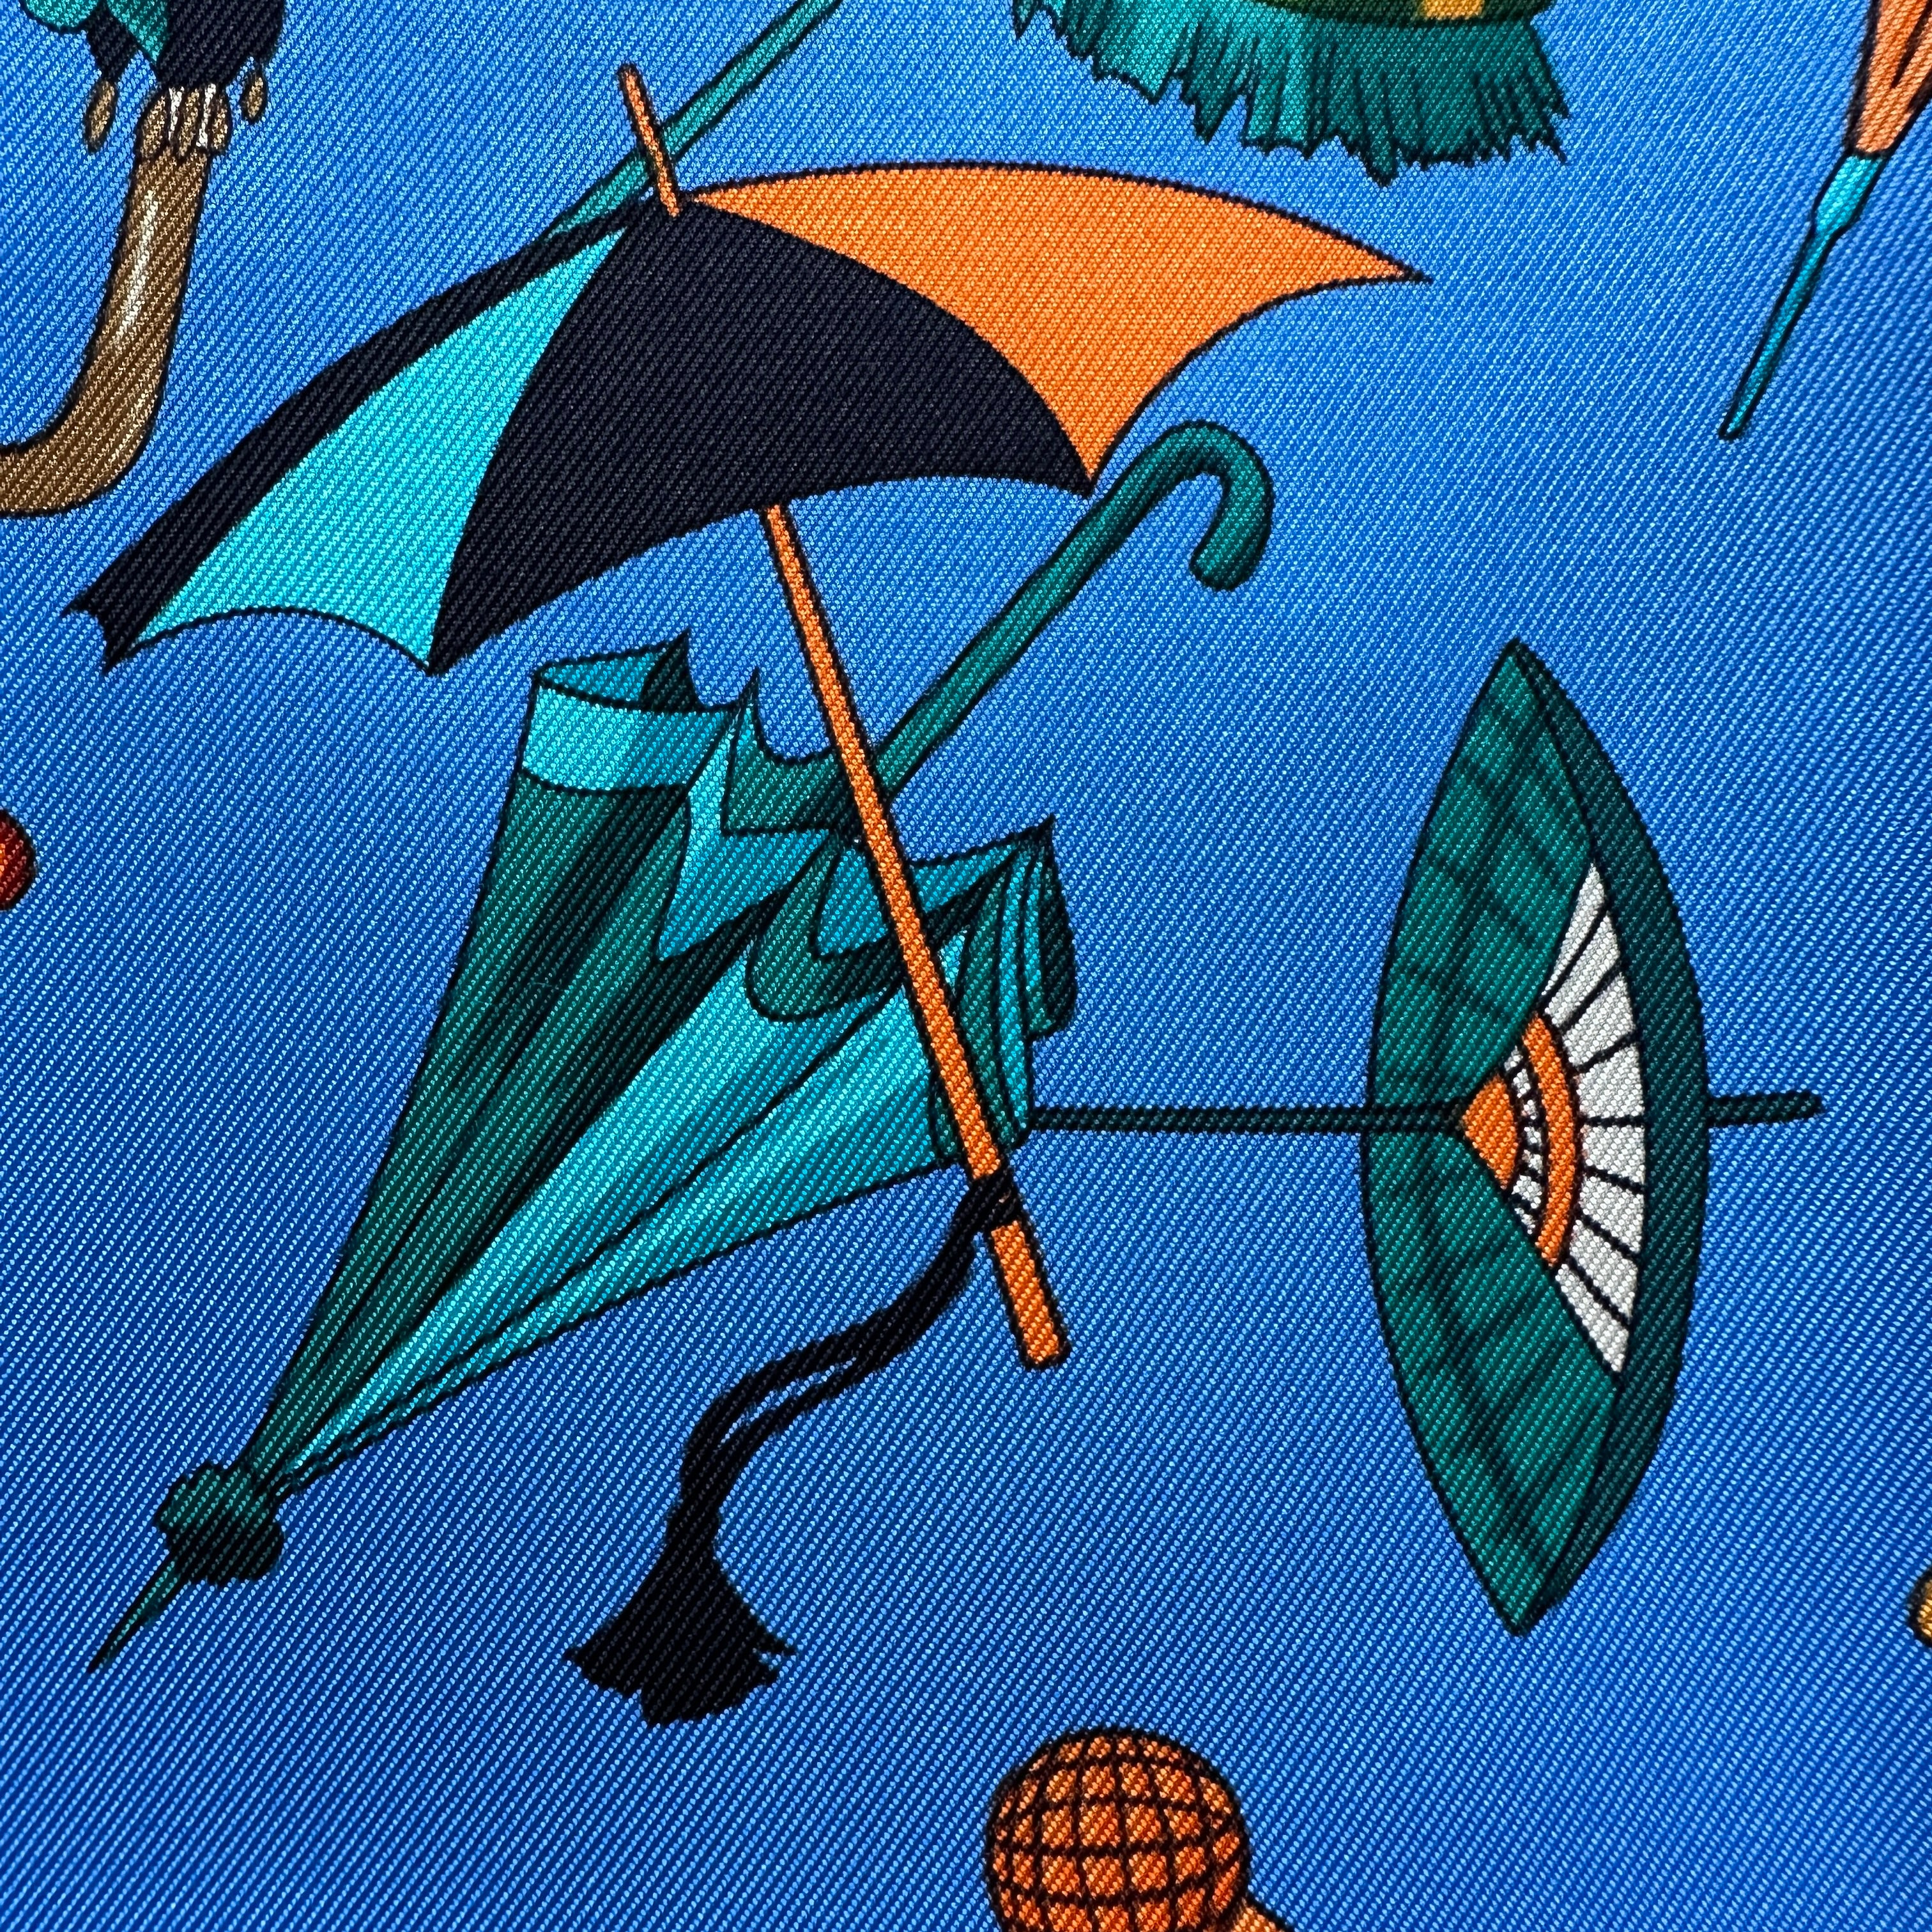 foulard-carre-hermes-ombrelles-et-parapluies-dessin-de-parapluies